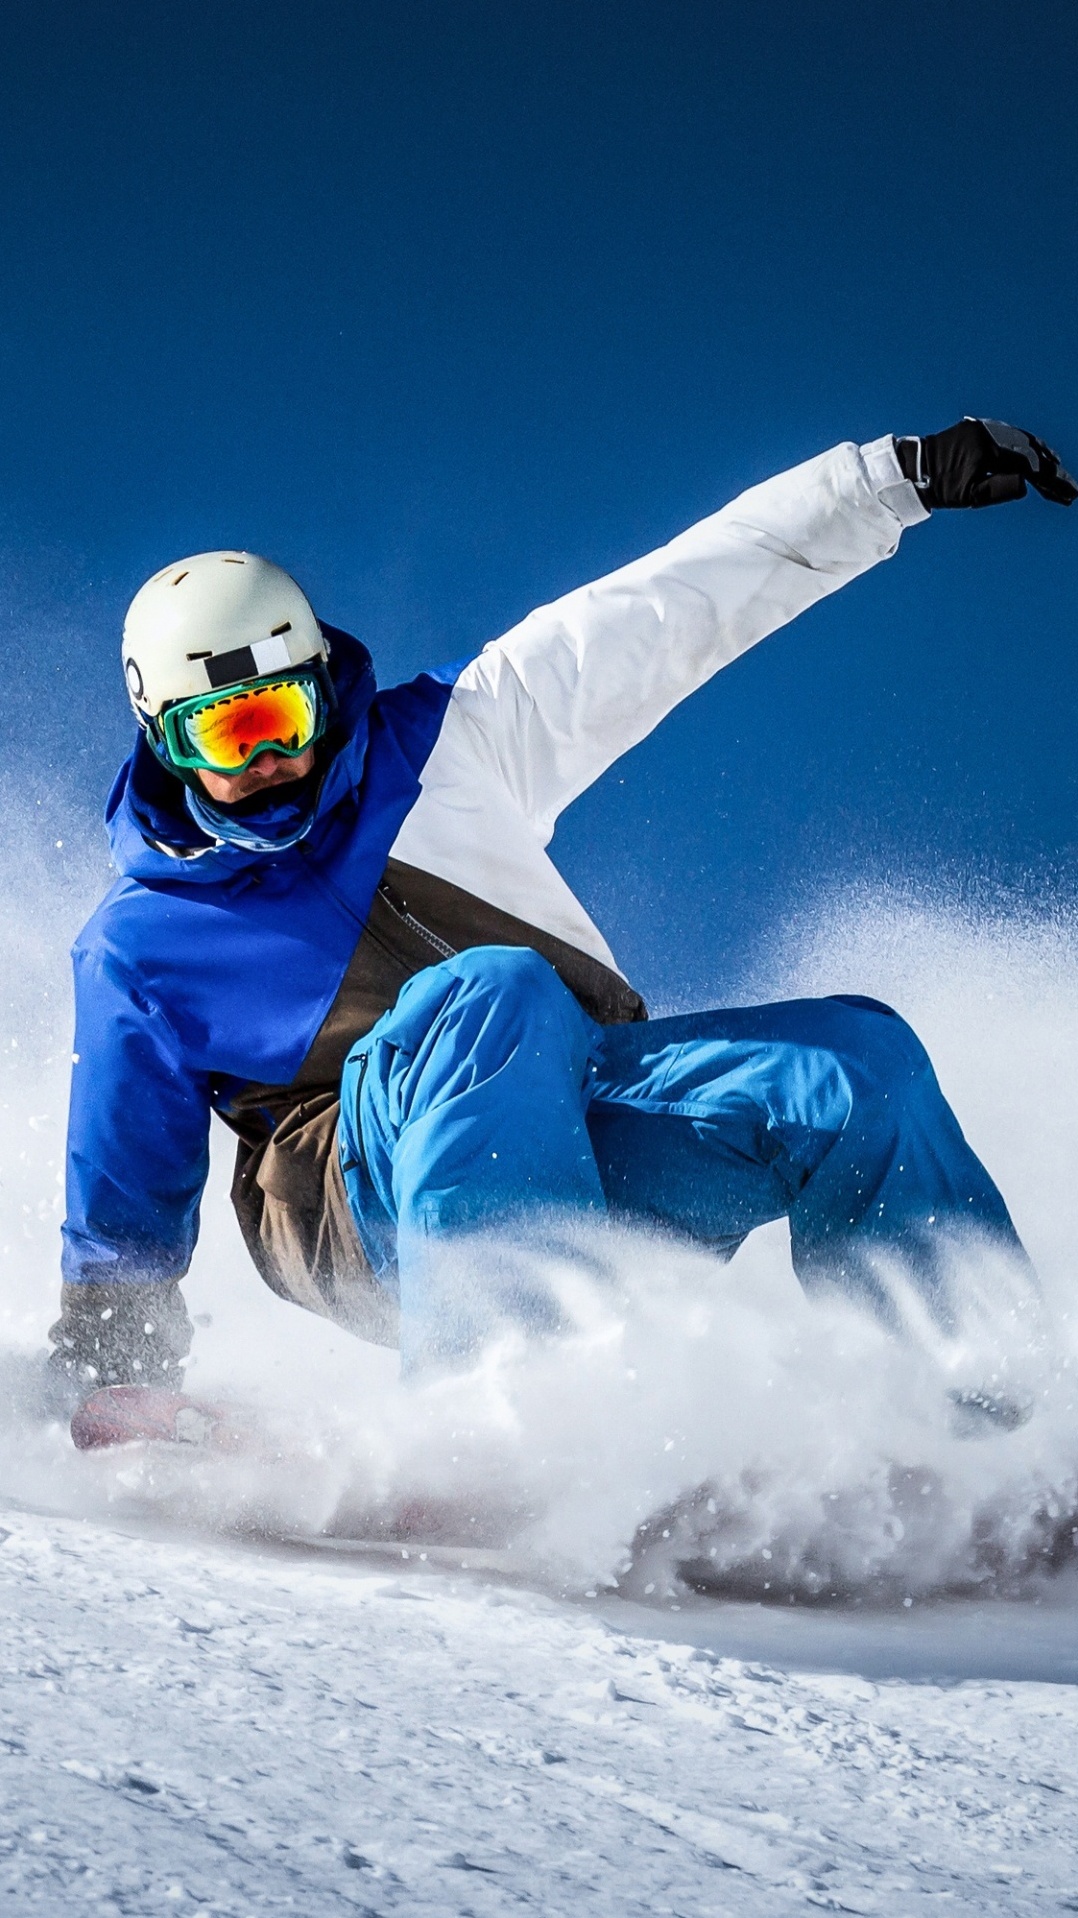 снег, сноуборд, лыжник, экстремальный вид спорта, лыжи